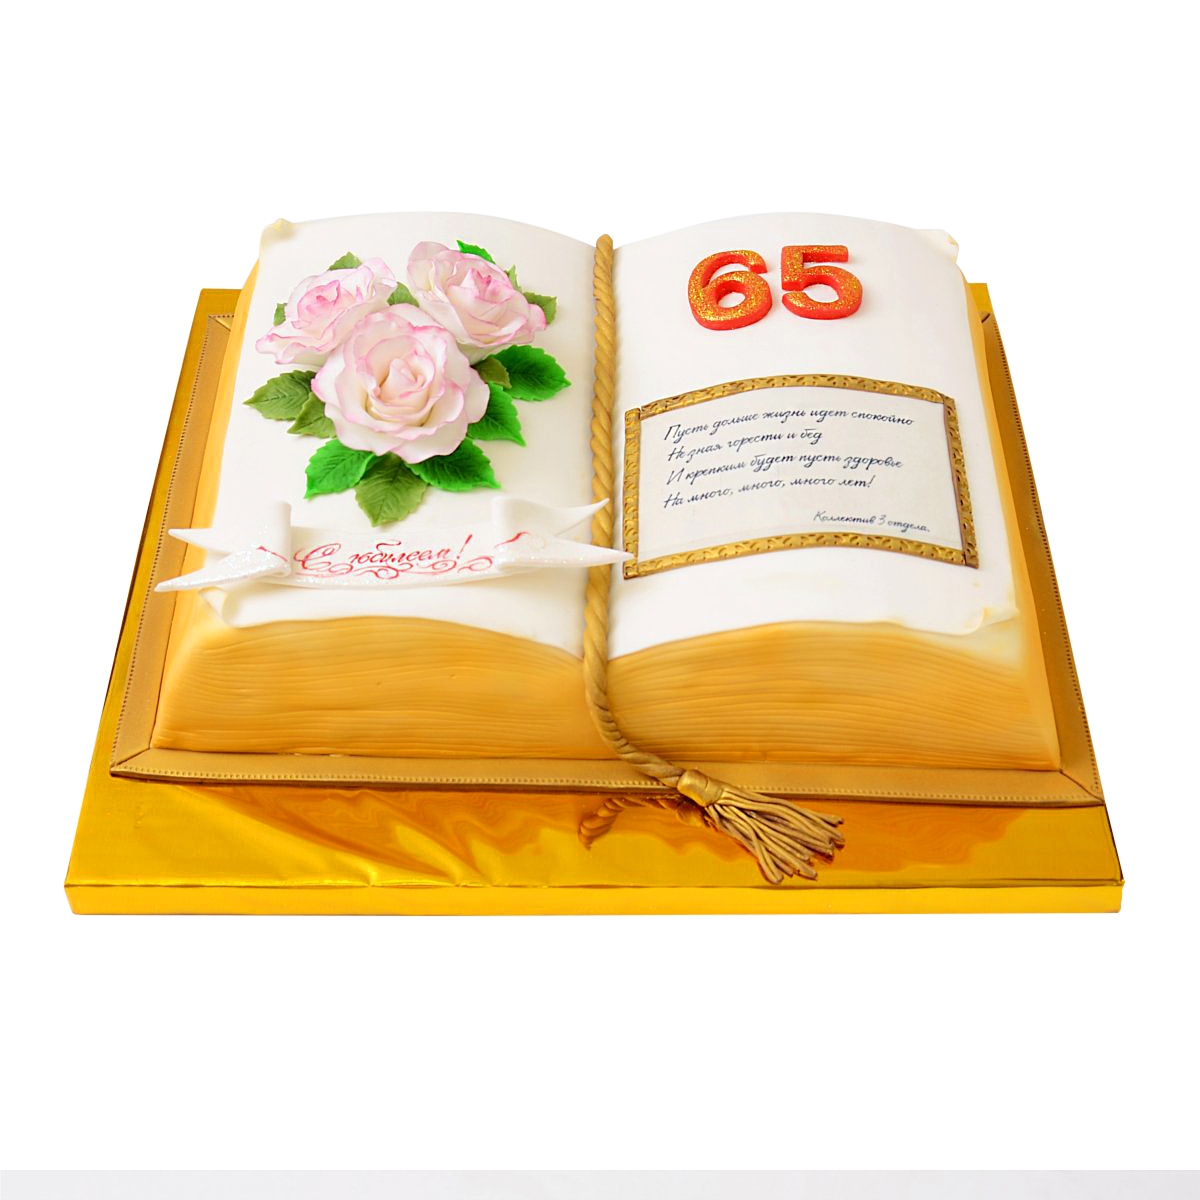 Cake to order - Anniversary